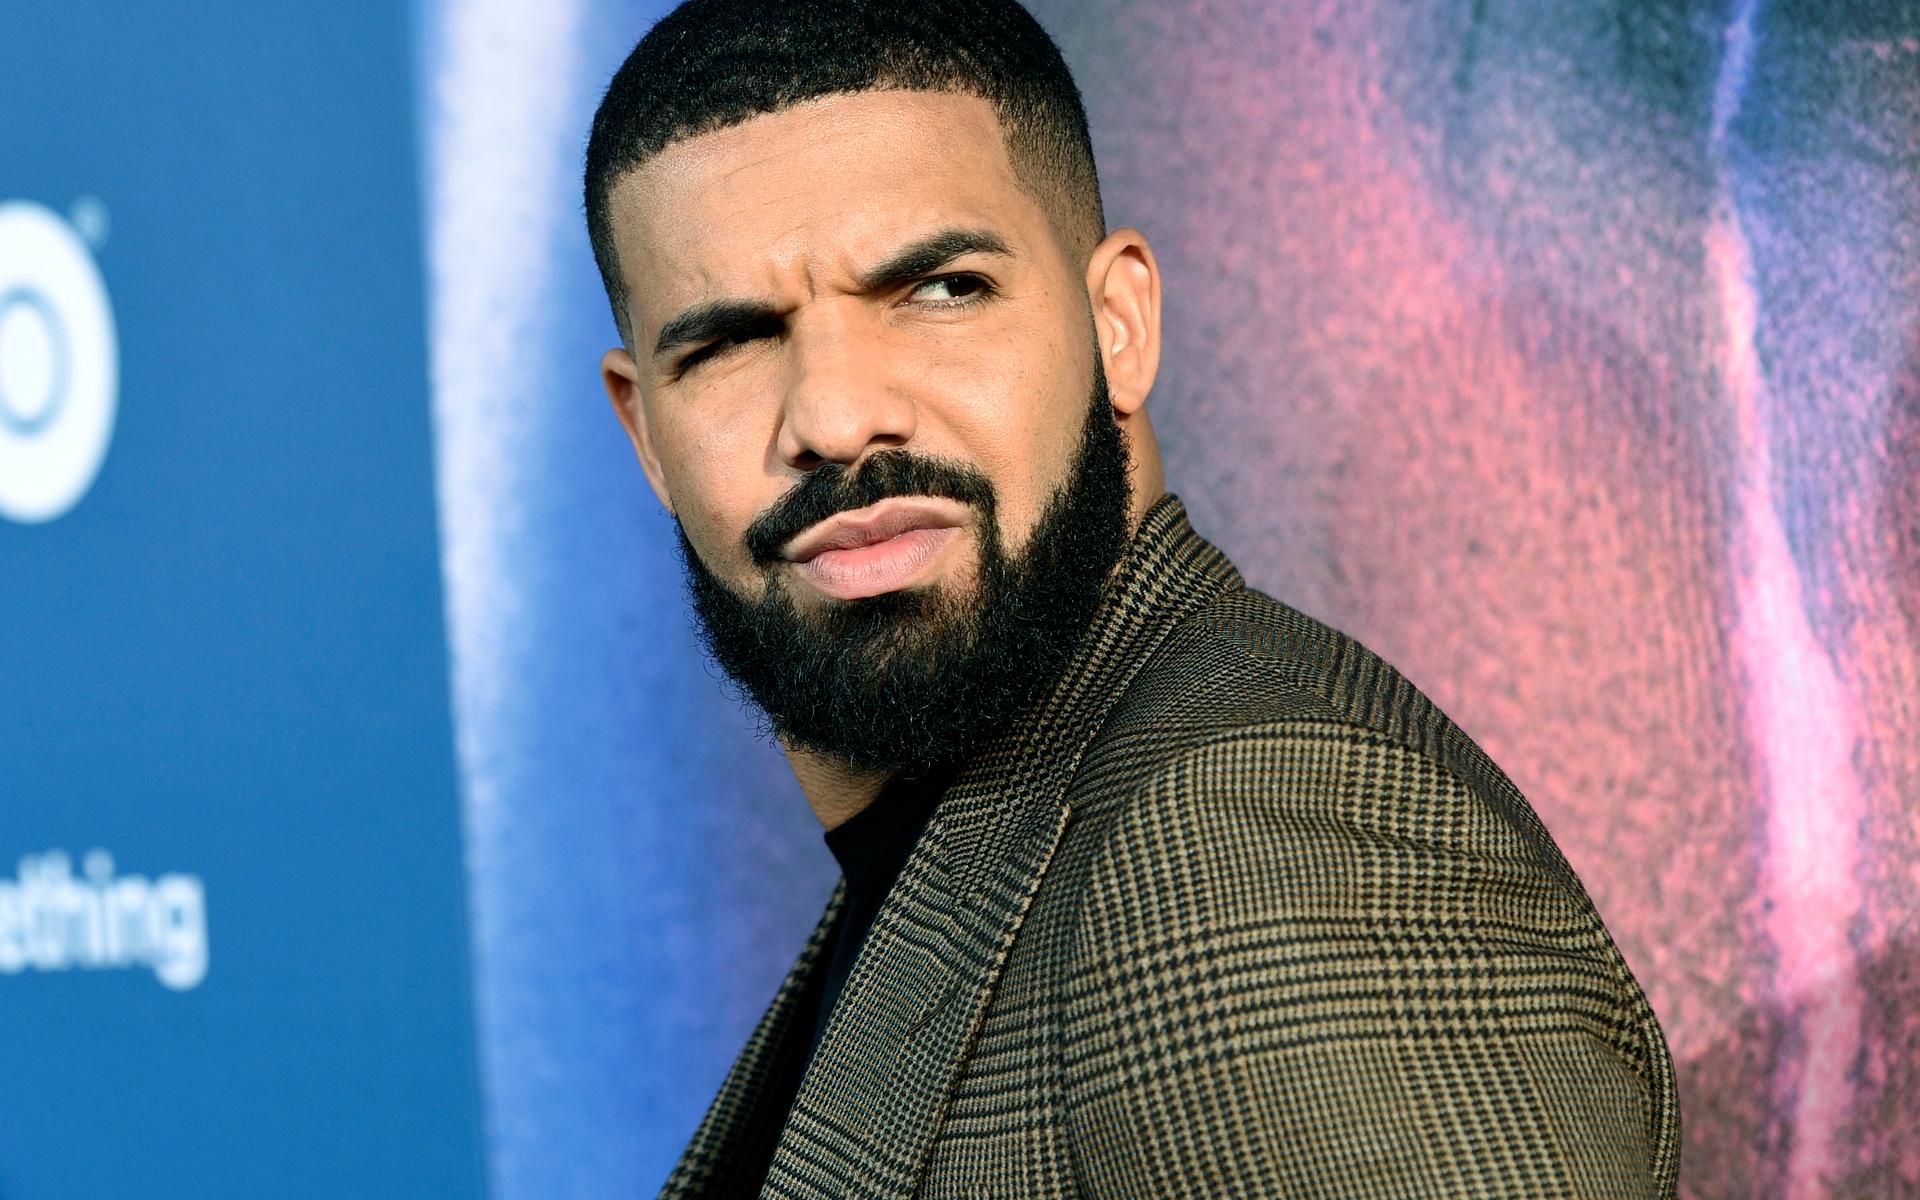 Den kanadensiska rapparen Drake har en förmögenhet på cirka två miljarder kronor. Pengar han gärna använder för att unna sig fina saker, som hem, smycken, designväskor och kläder. Bland annat har han nyligen hyrt ett hus i Beverly Hills. Arkivbild.